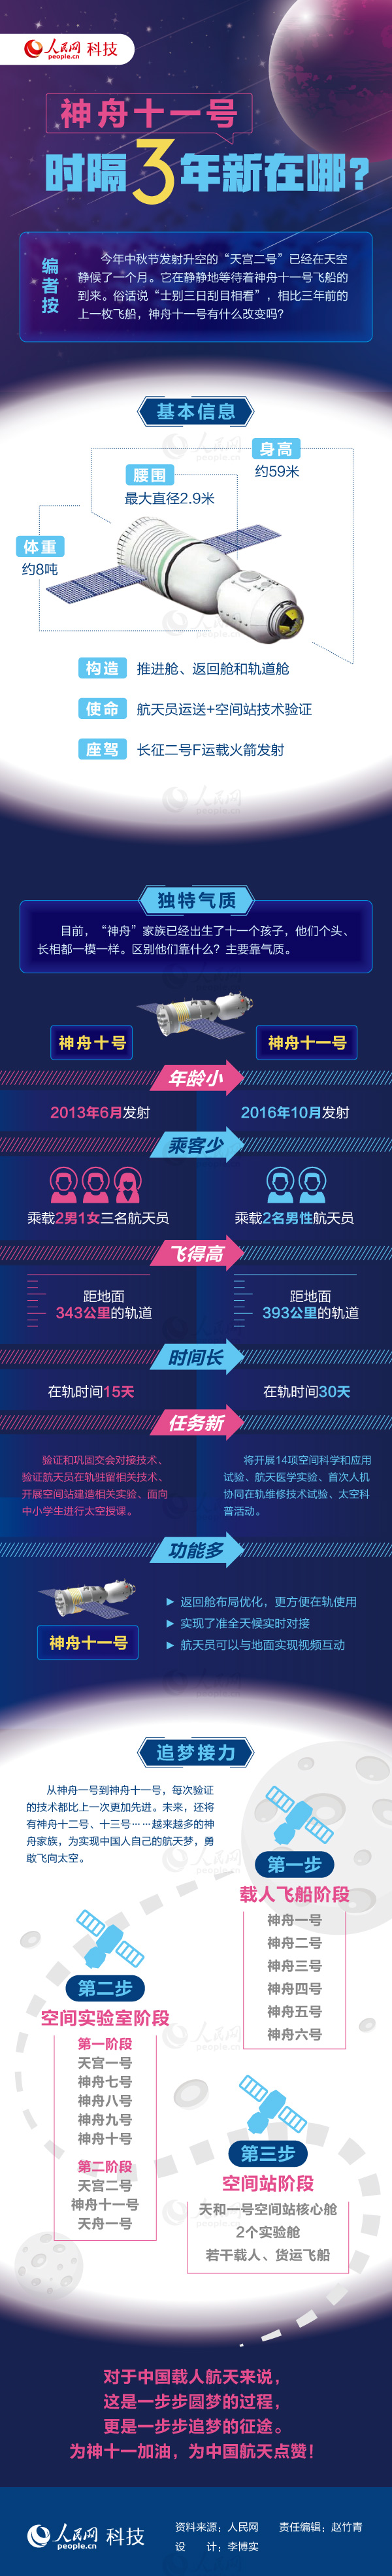 2017年广东公务员考试时政